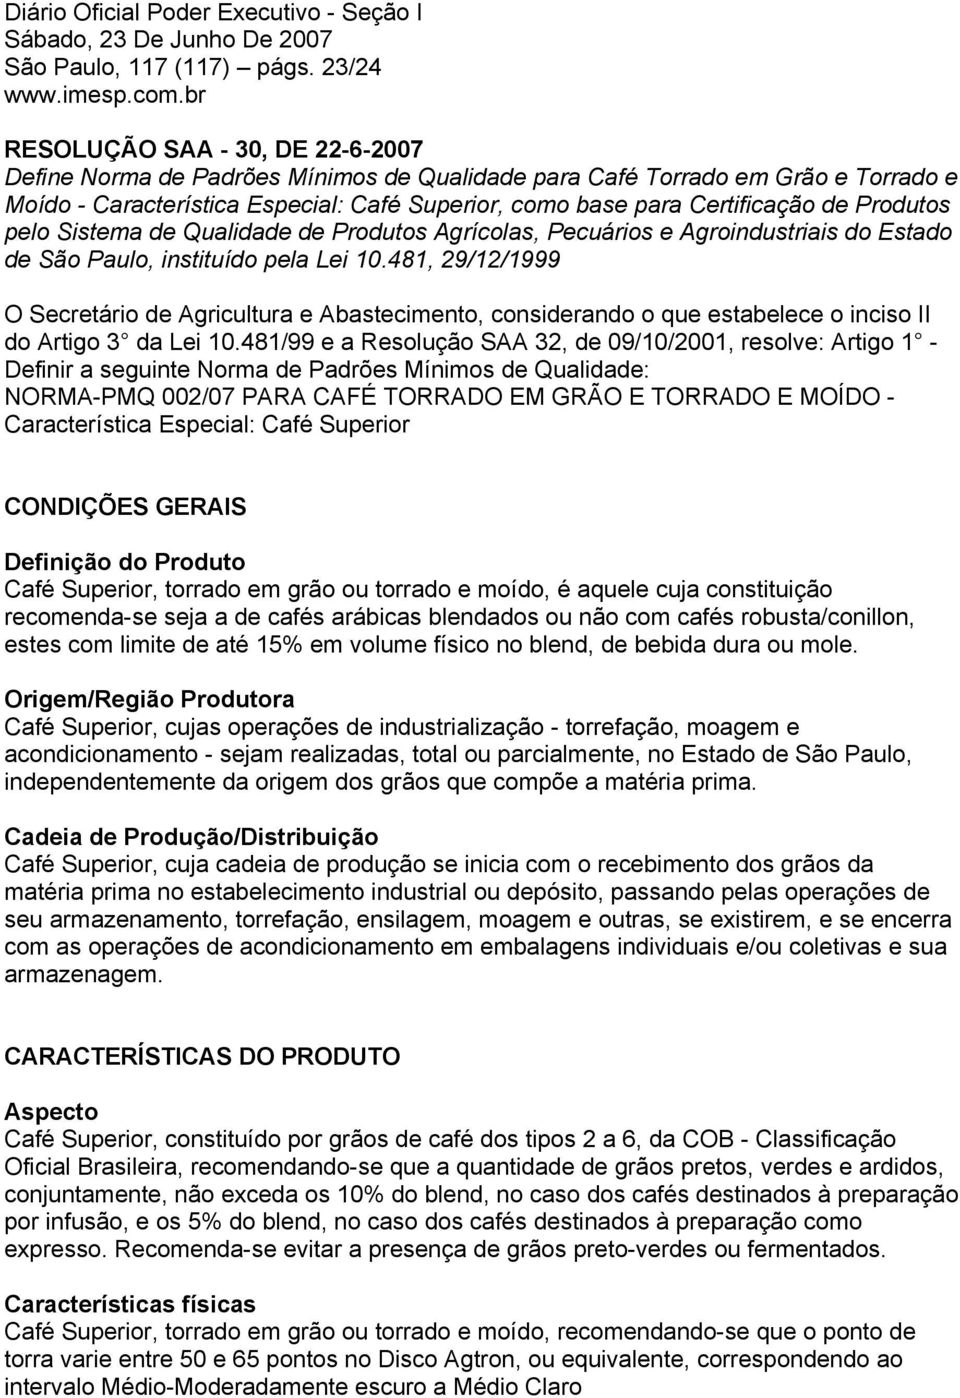 Produtos pelo Sistema de Qualidade de Produtos Agrícolas, Pecuários e Agroindustriais do Estado de São Paulo, instituído pela Lei 10.